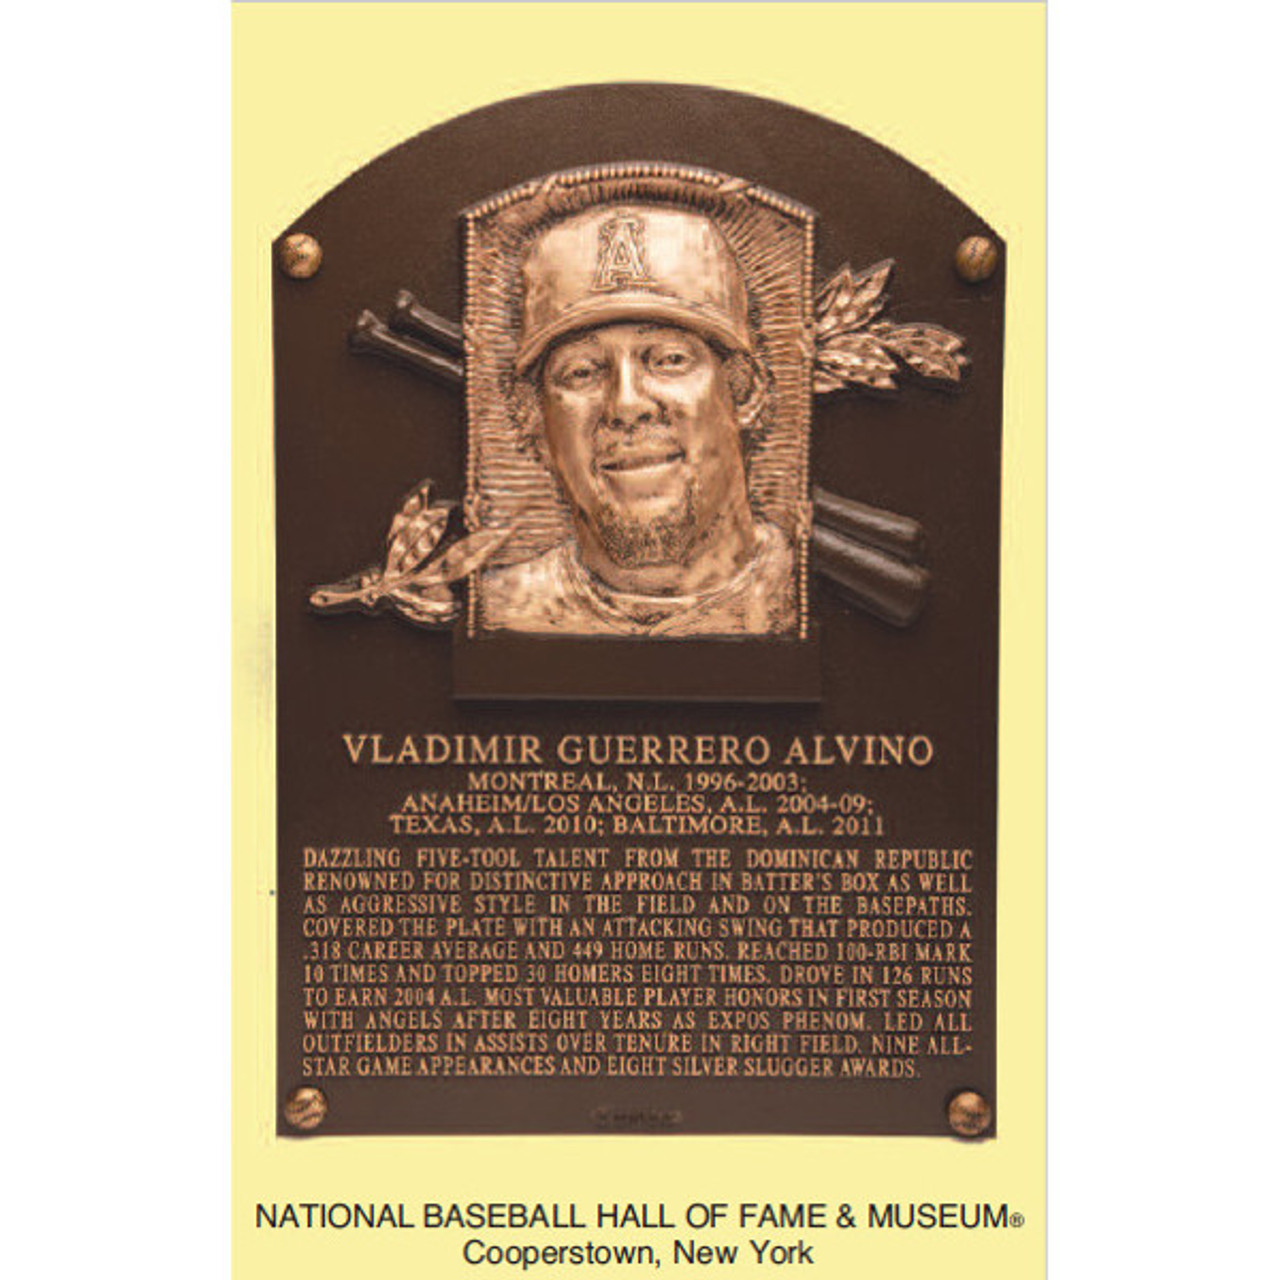 Vladimir Guerrero Baseball Hall of Fame Plaque Postcard (English)